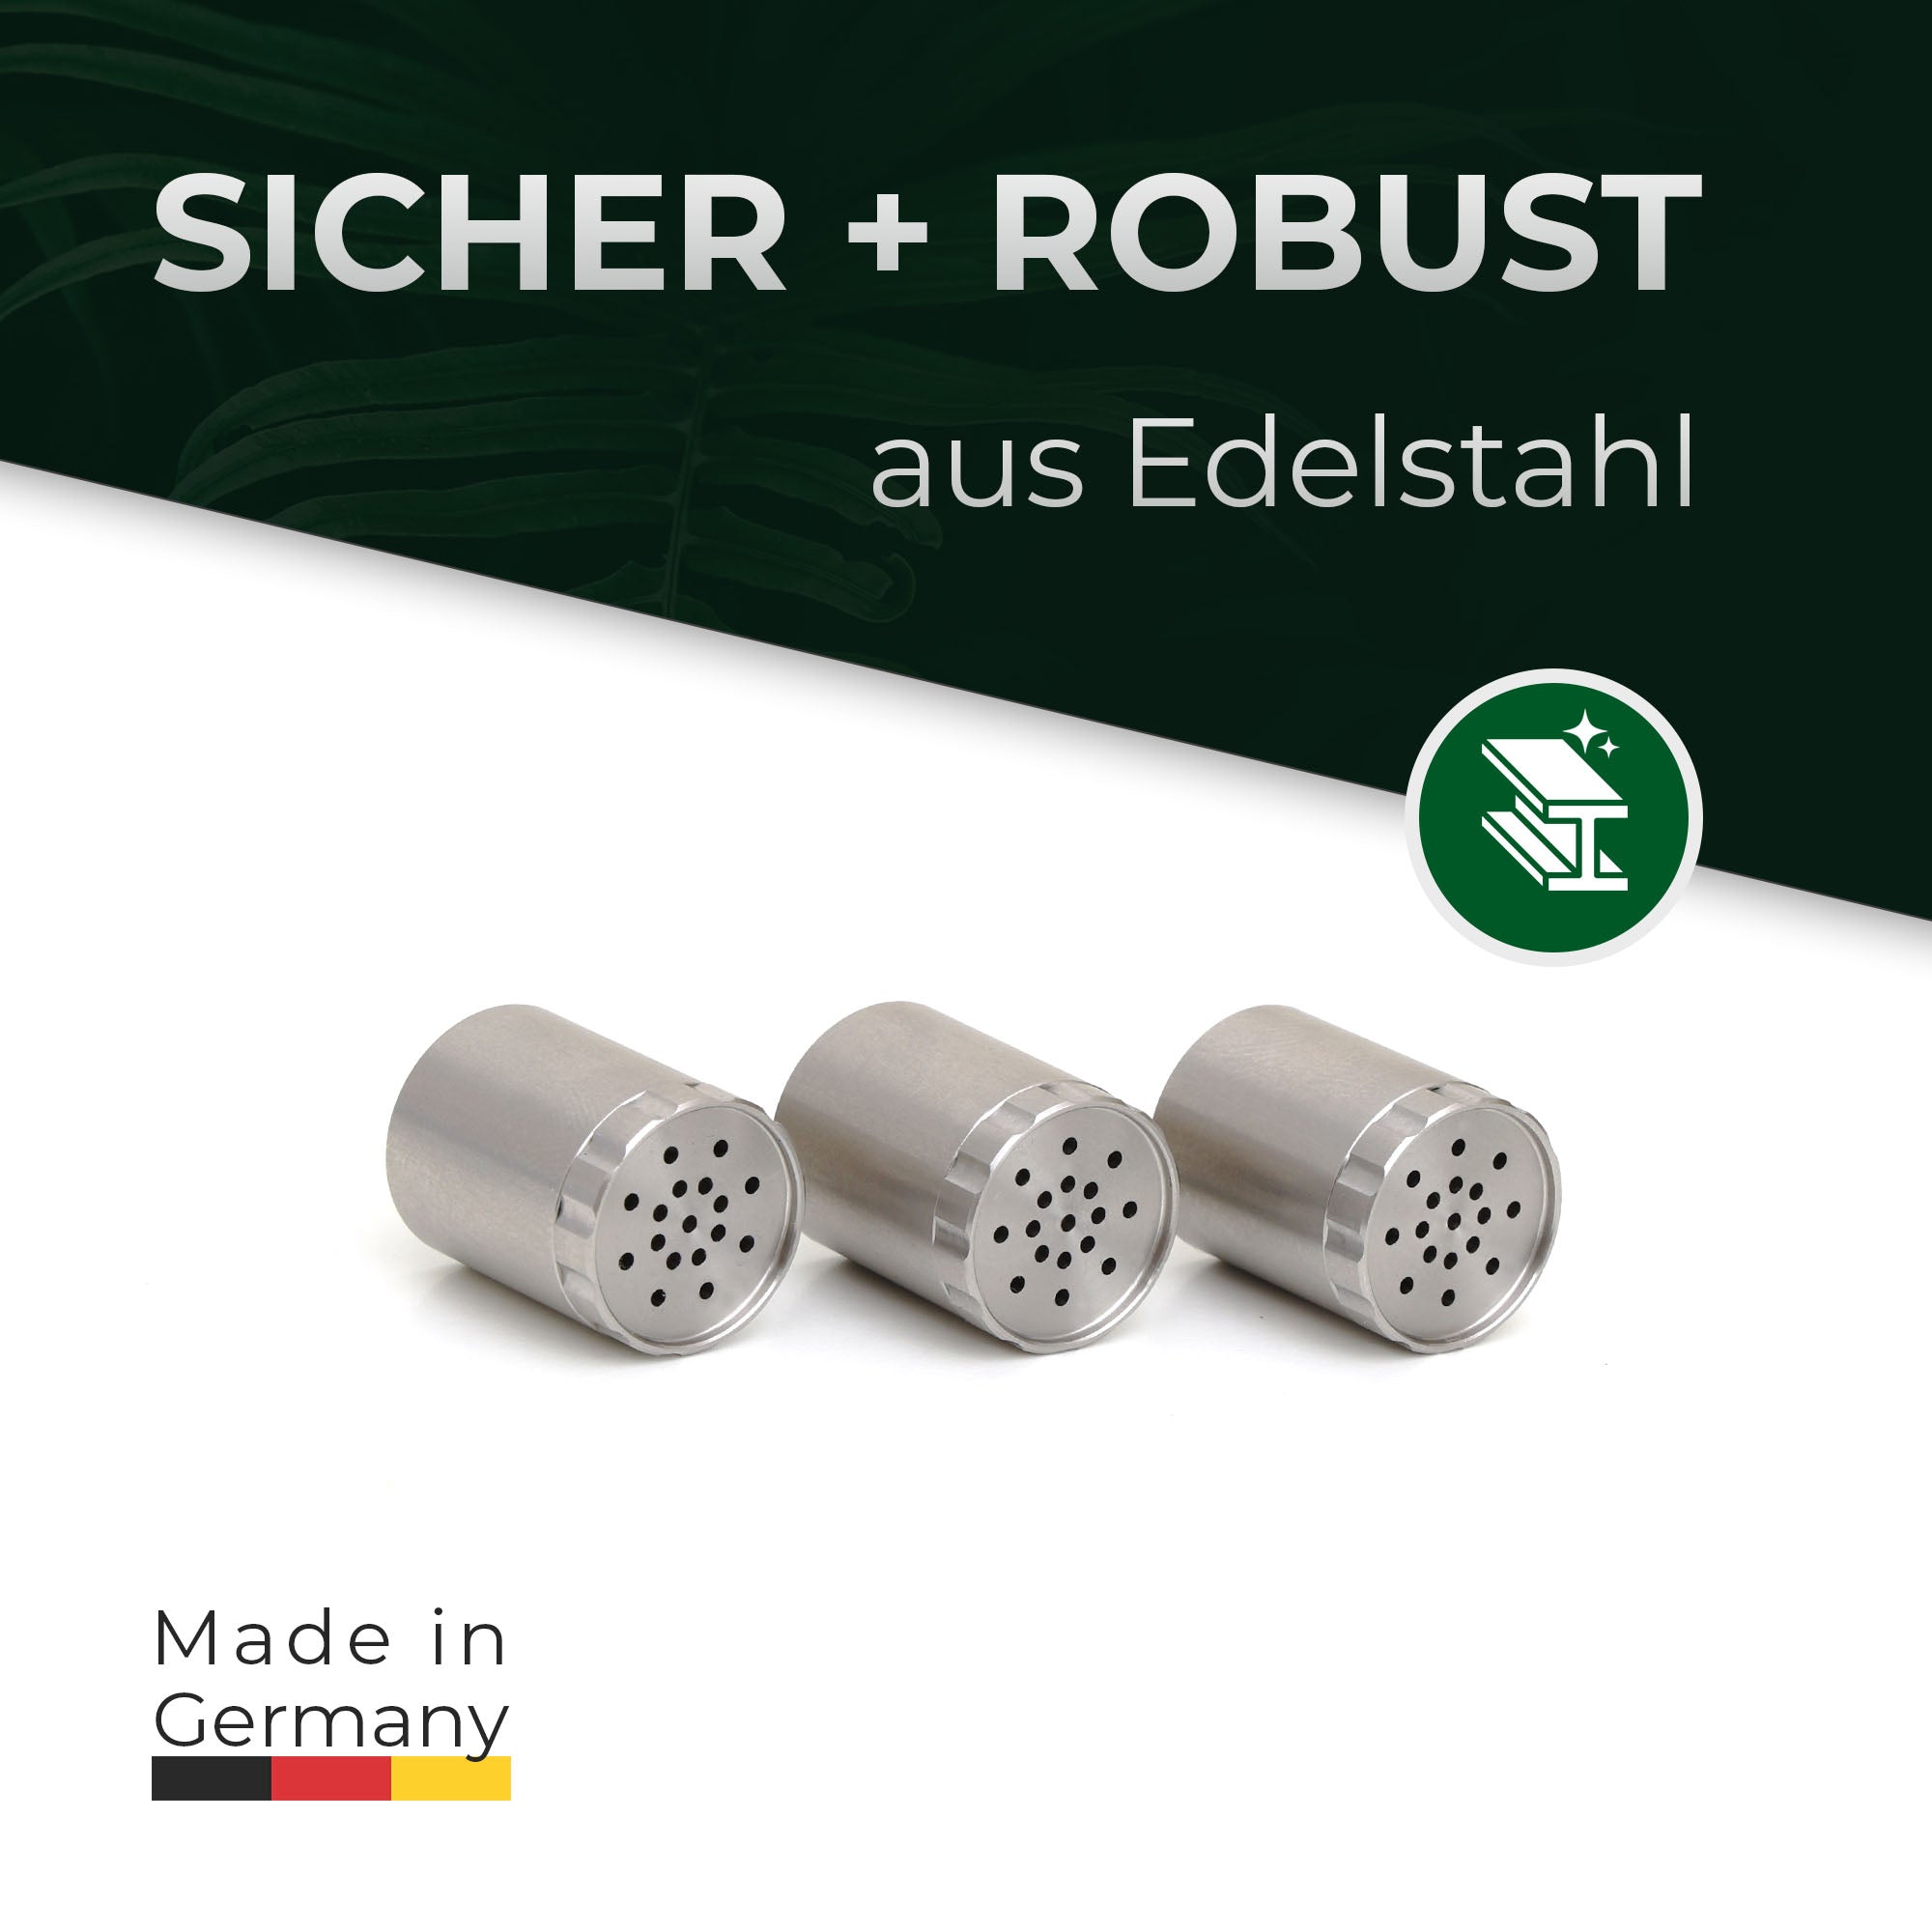 Dosierkapseln Convectum aus Edelstahl, sicher und robust. Made in Germany